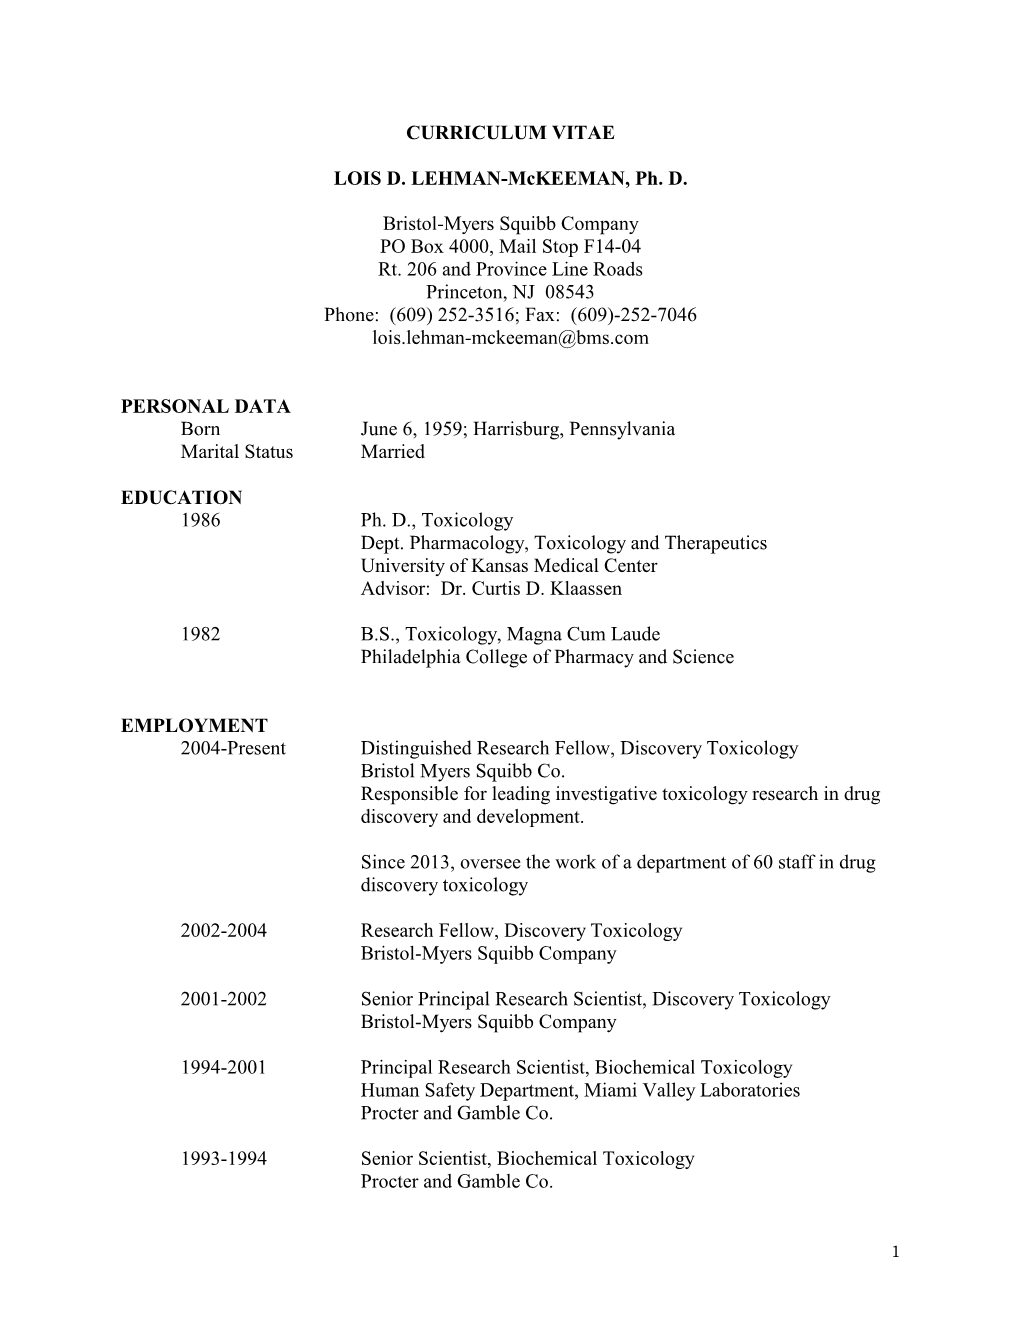 Dr. Lehman-Mckeeman's CV